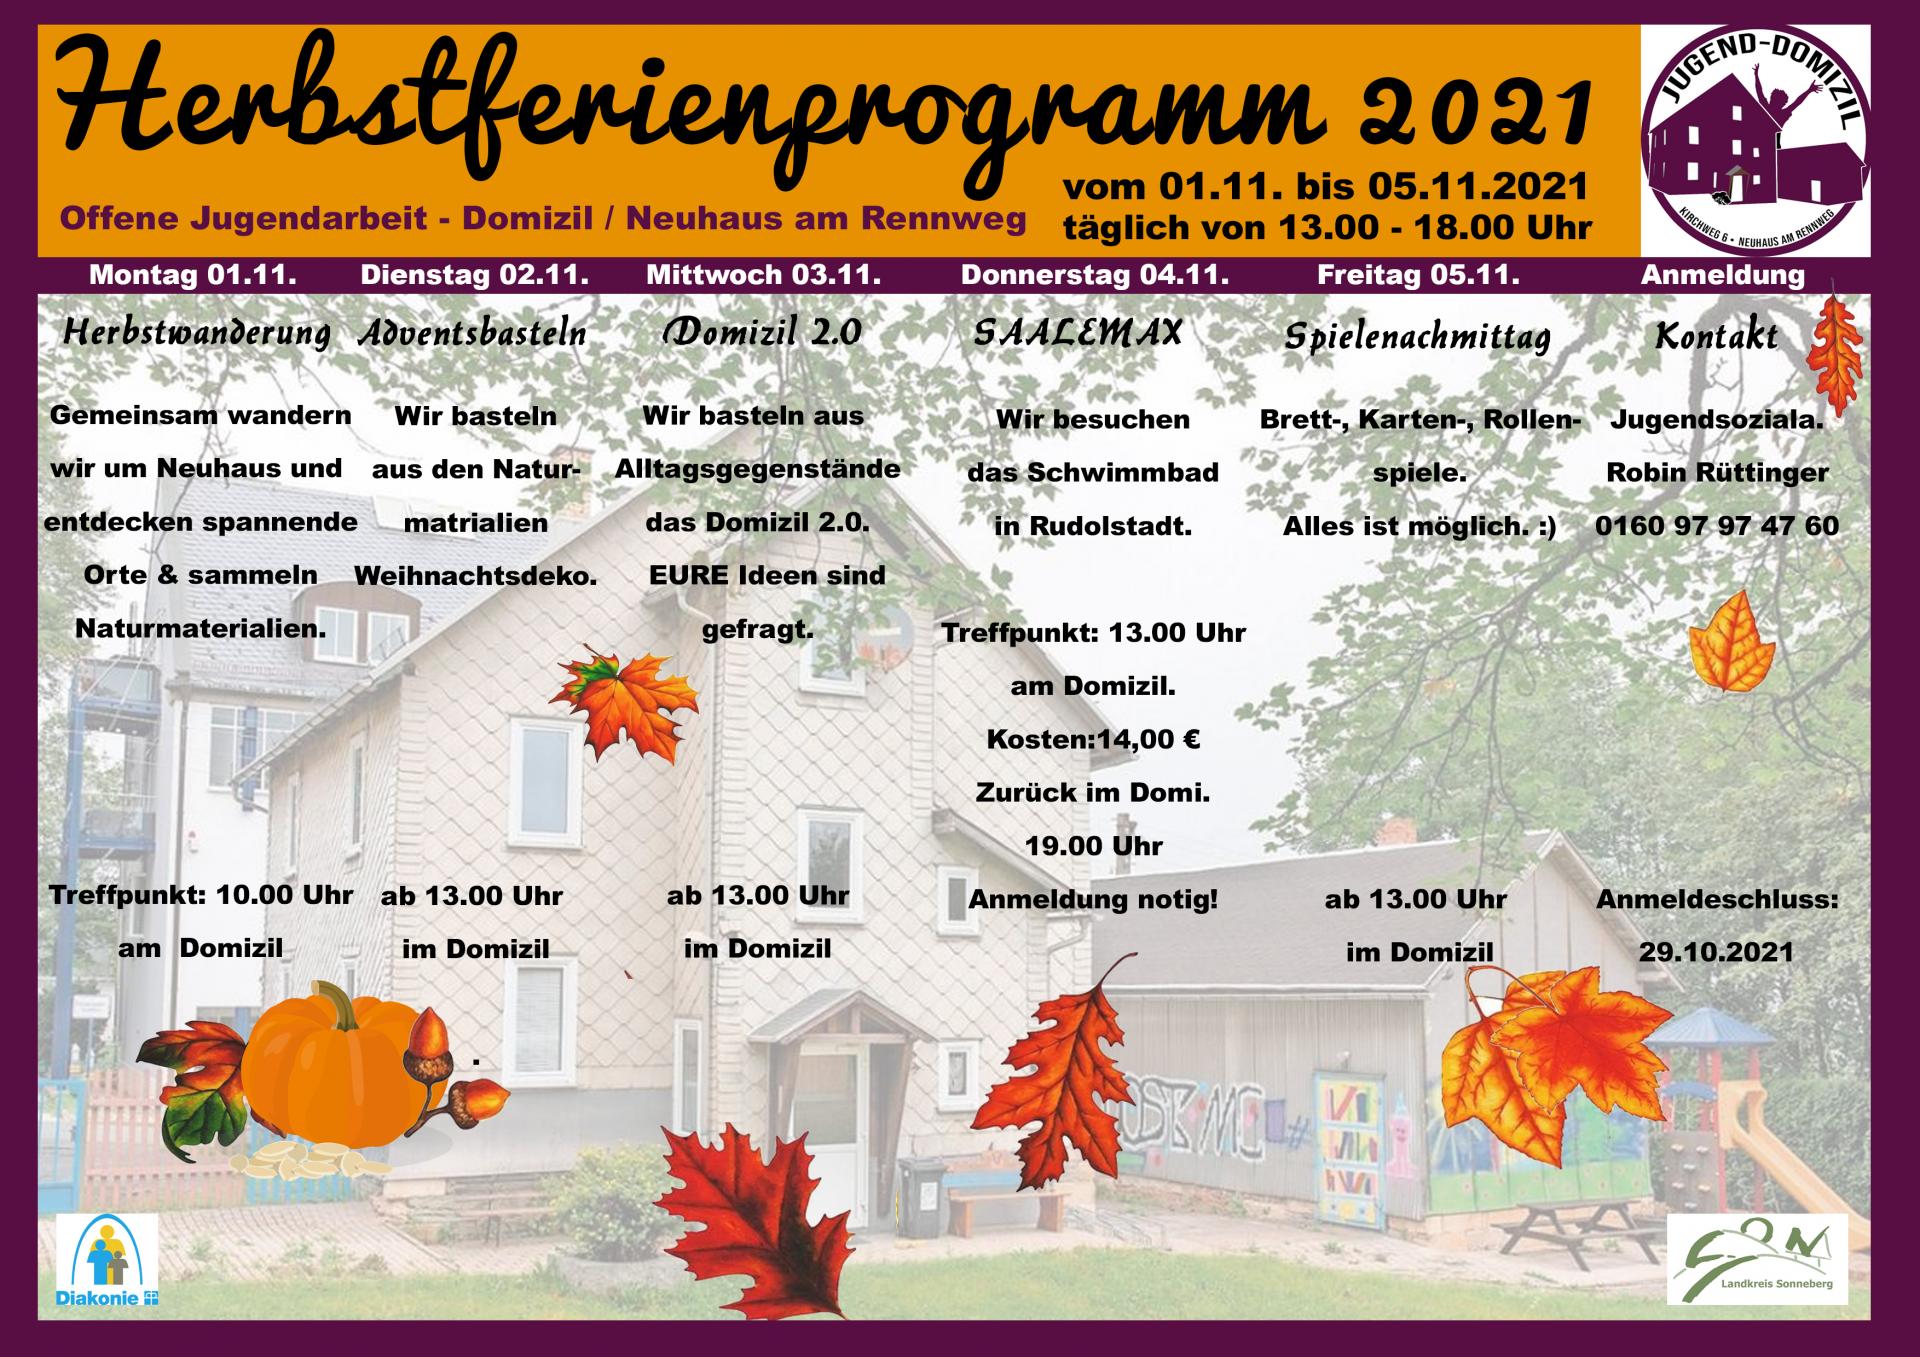 Herbstferienprogramm Jugenddomizil Neuhaus am Rennweg